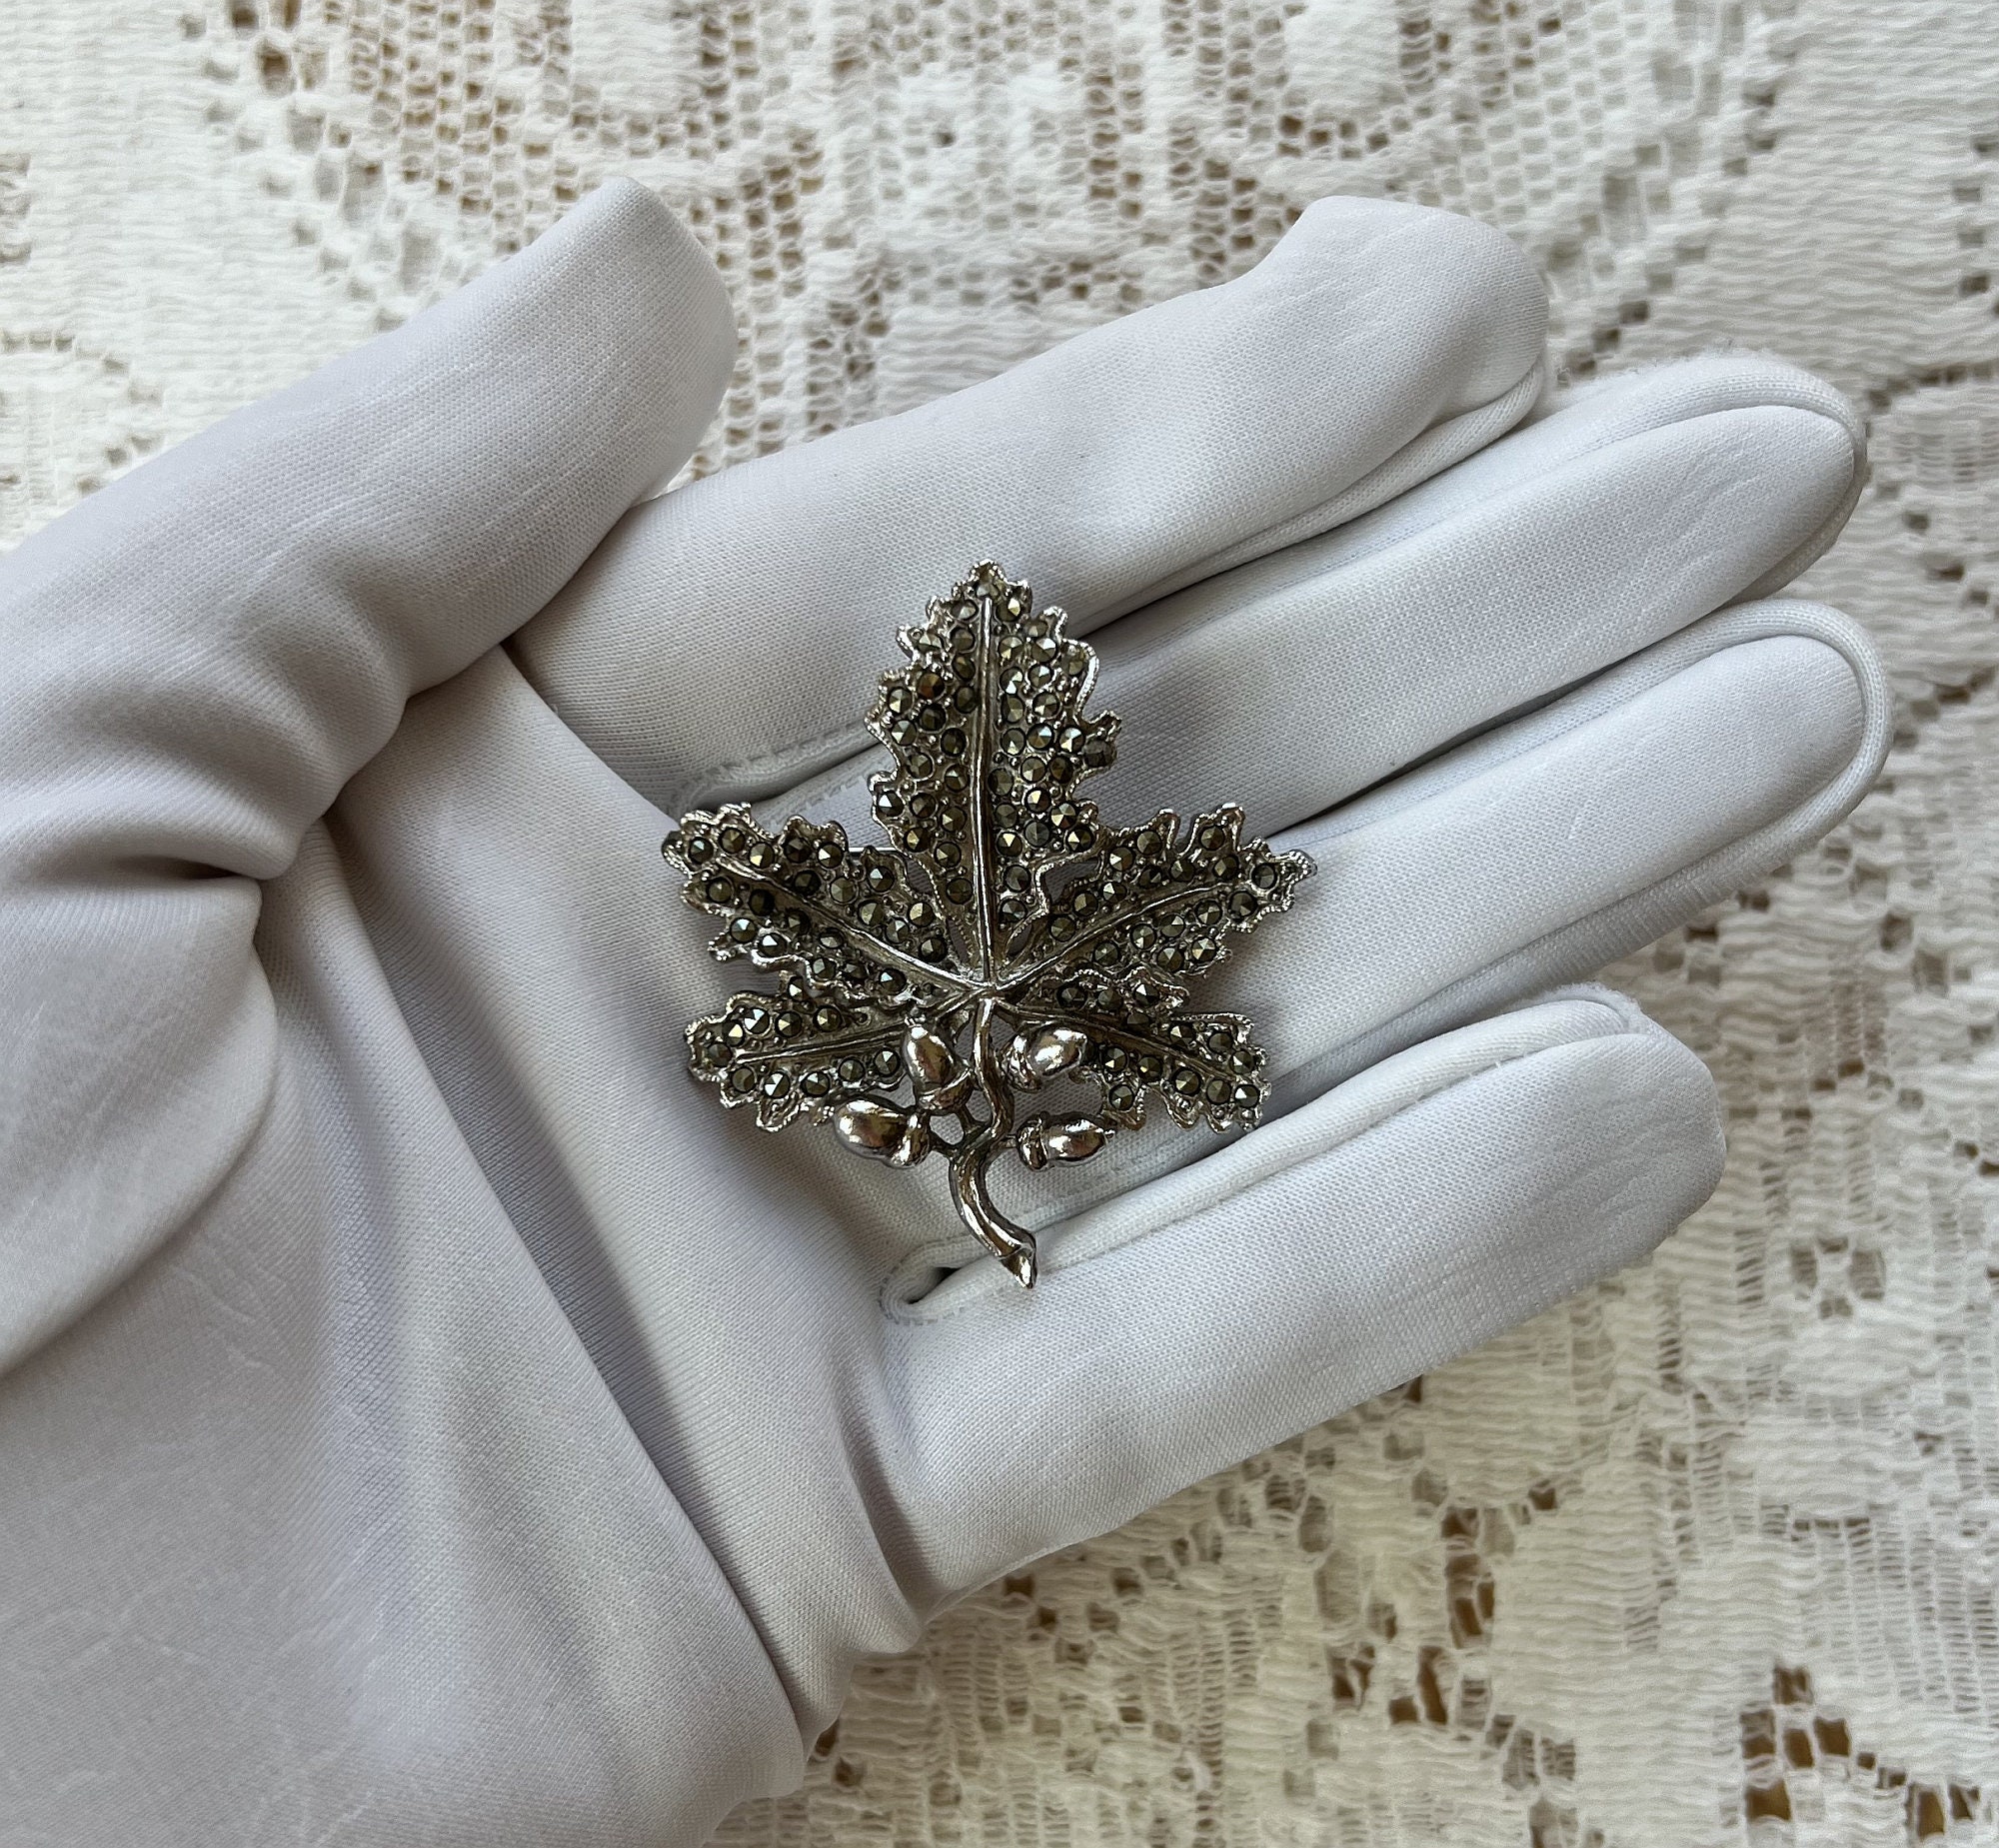 Vintage Jewellery Ivy Leaf Design Rhodium Plate Marcasite 